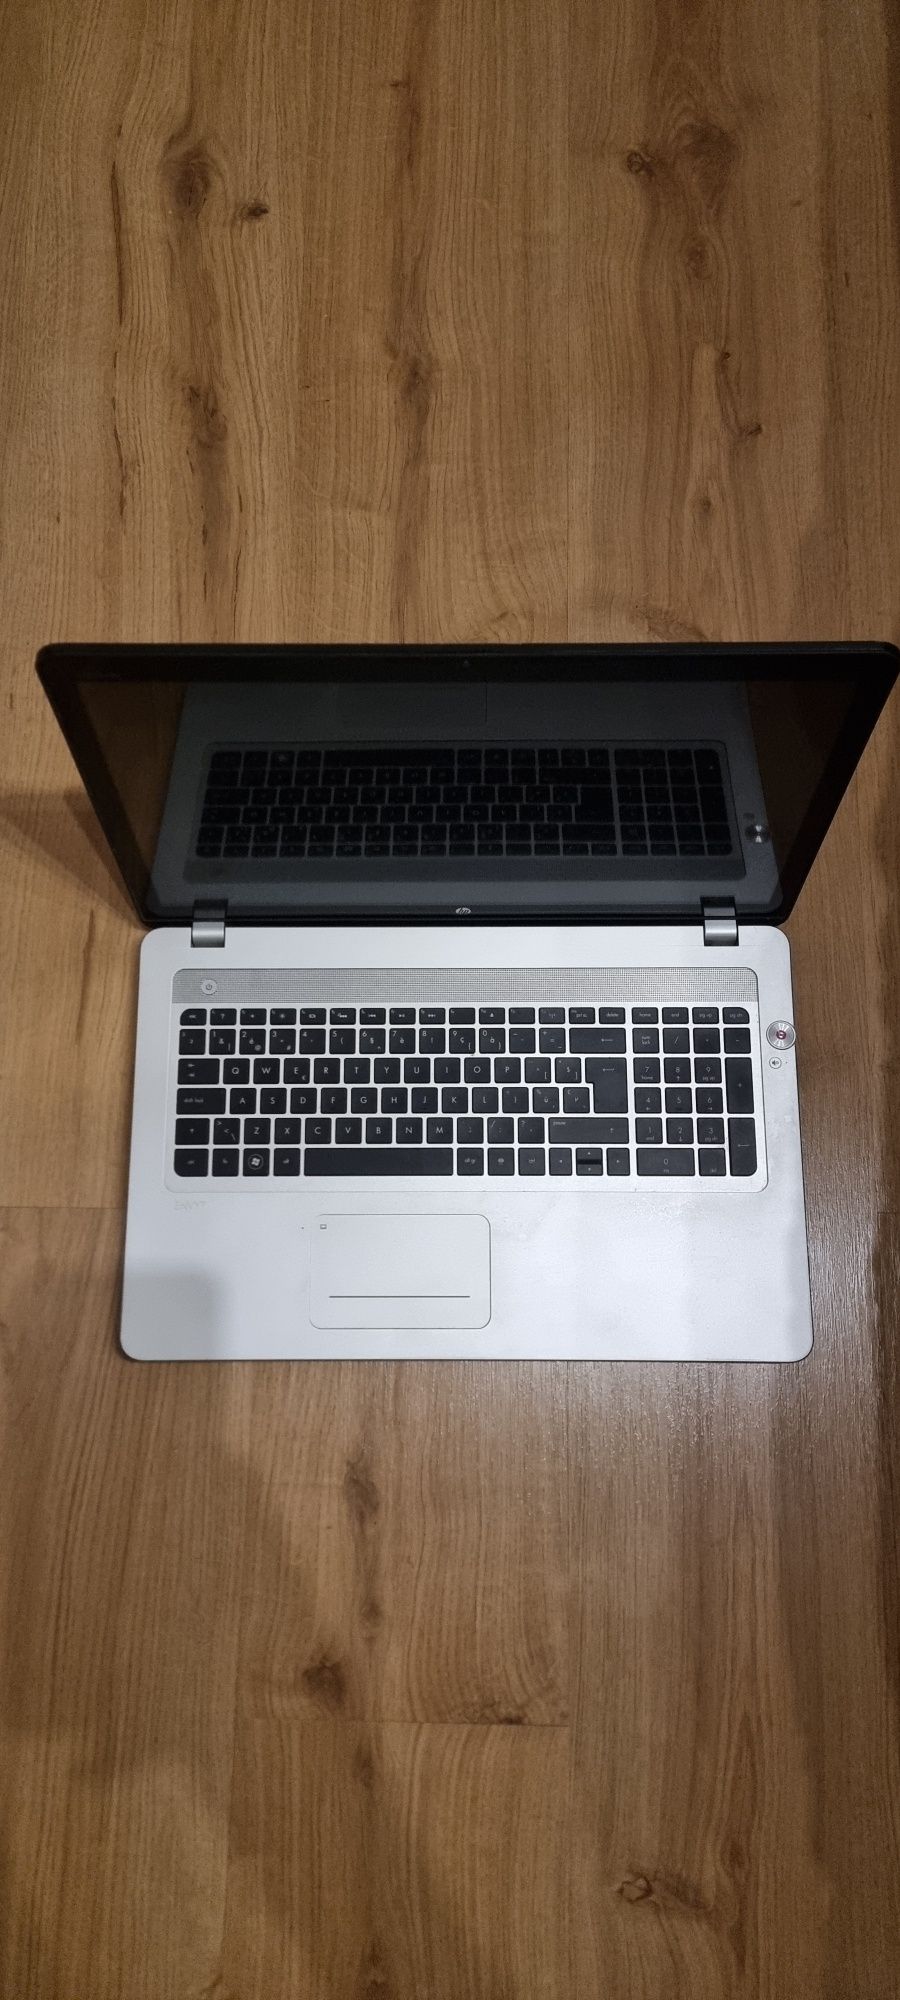 Laptop HP Envy 17 i7 8gb ram dysk 180 ssd Full HD 17